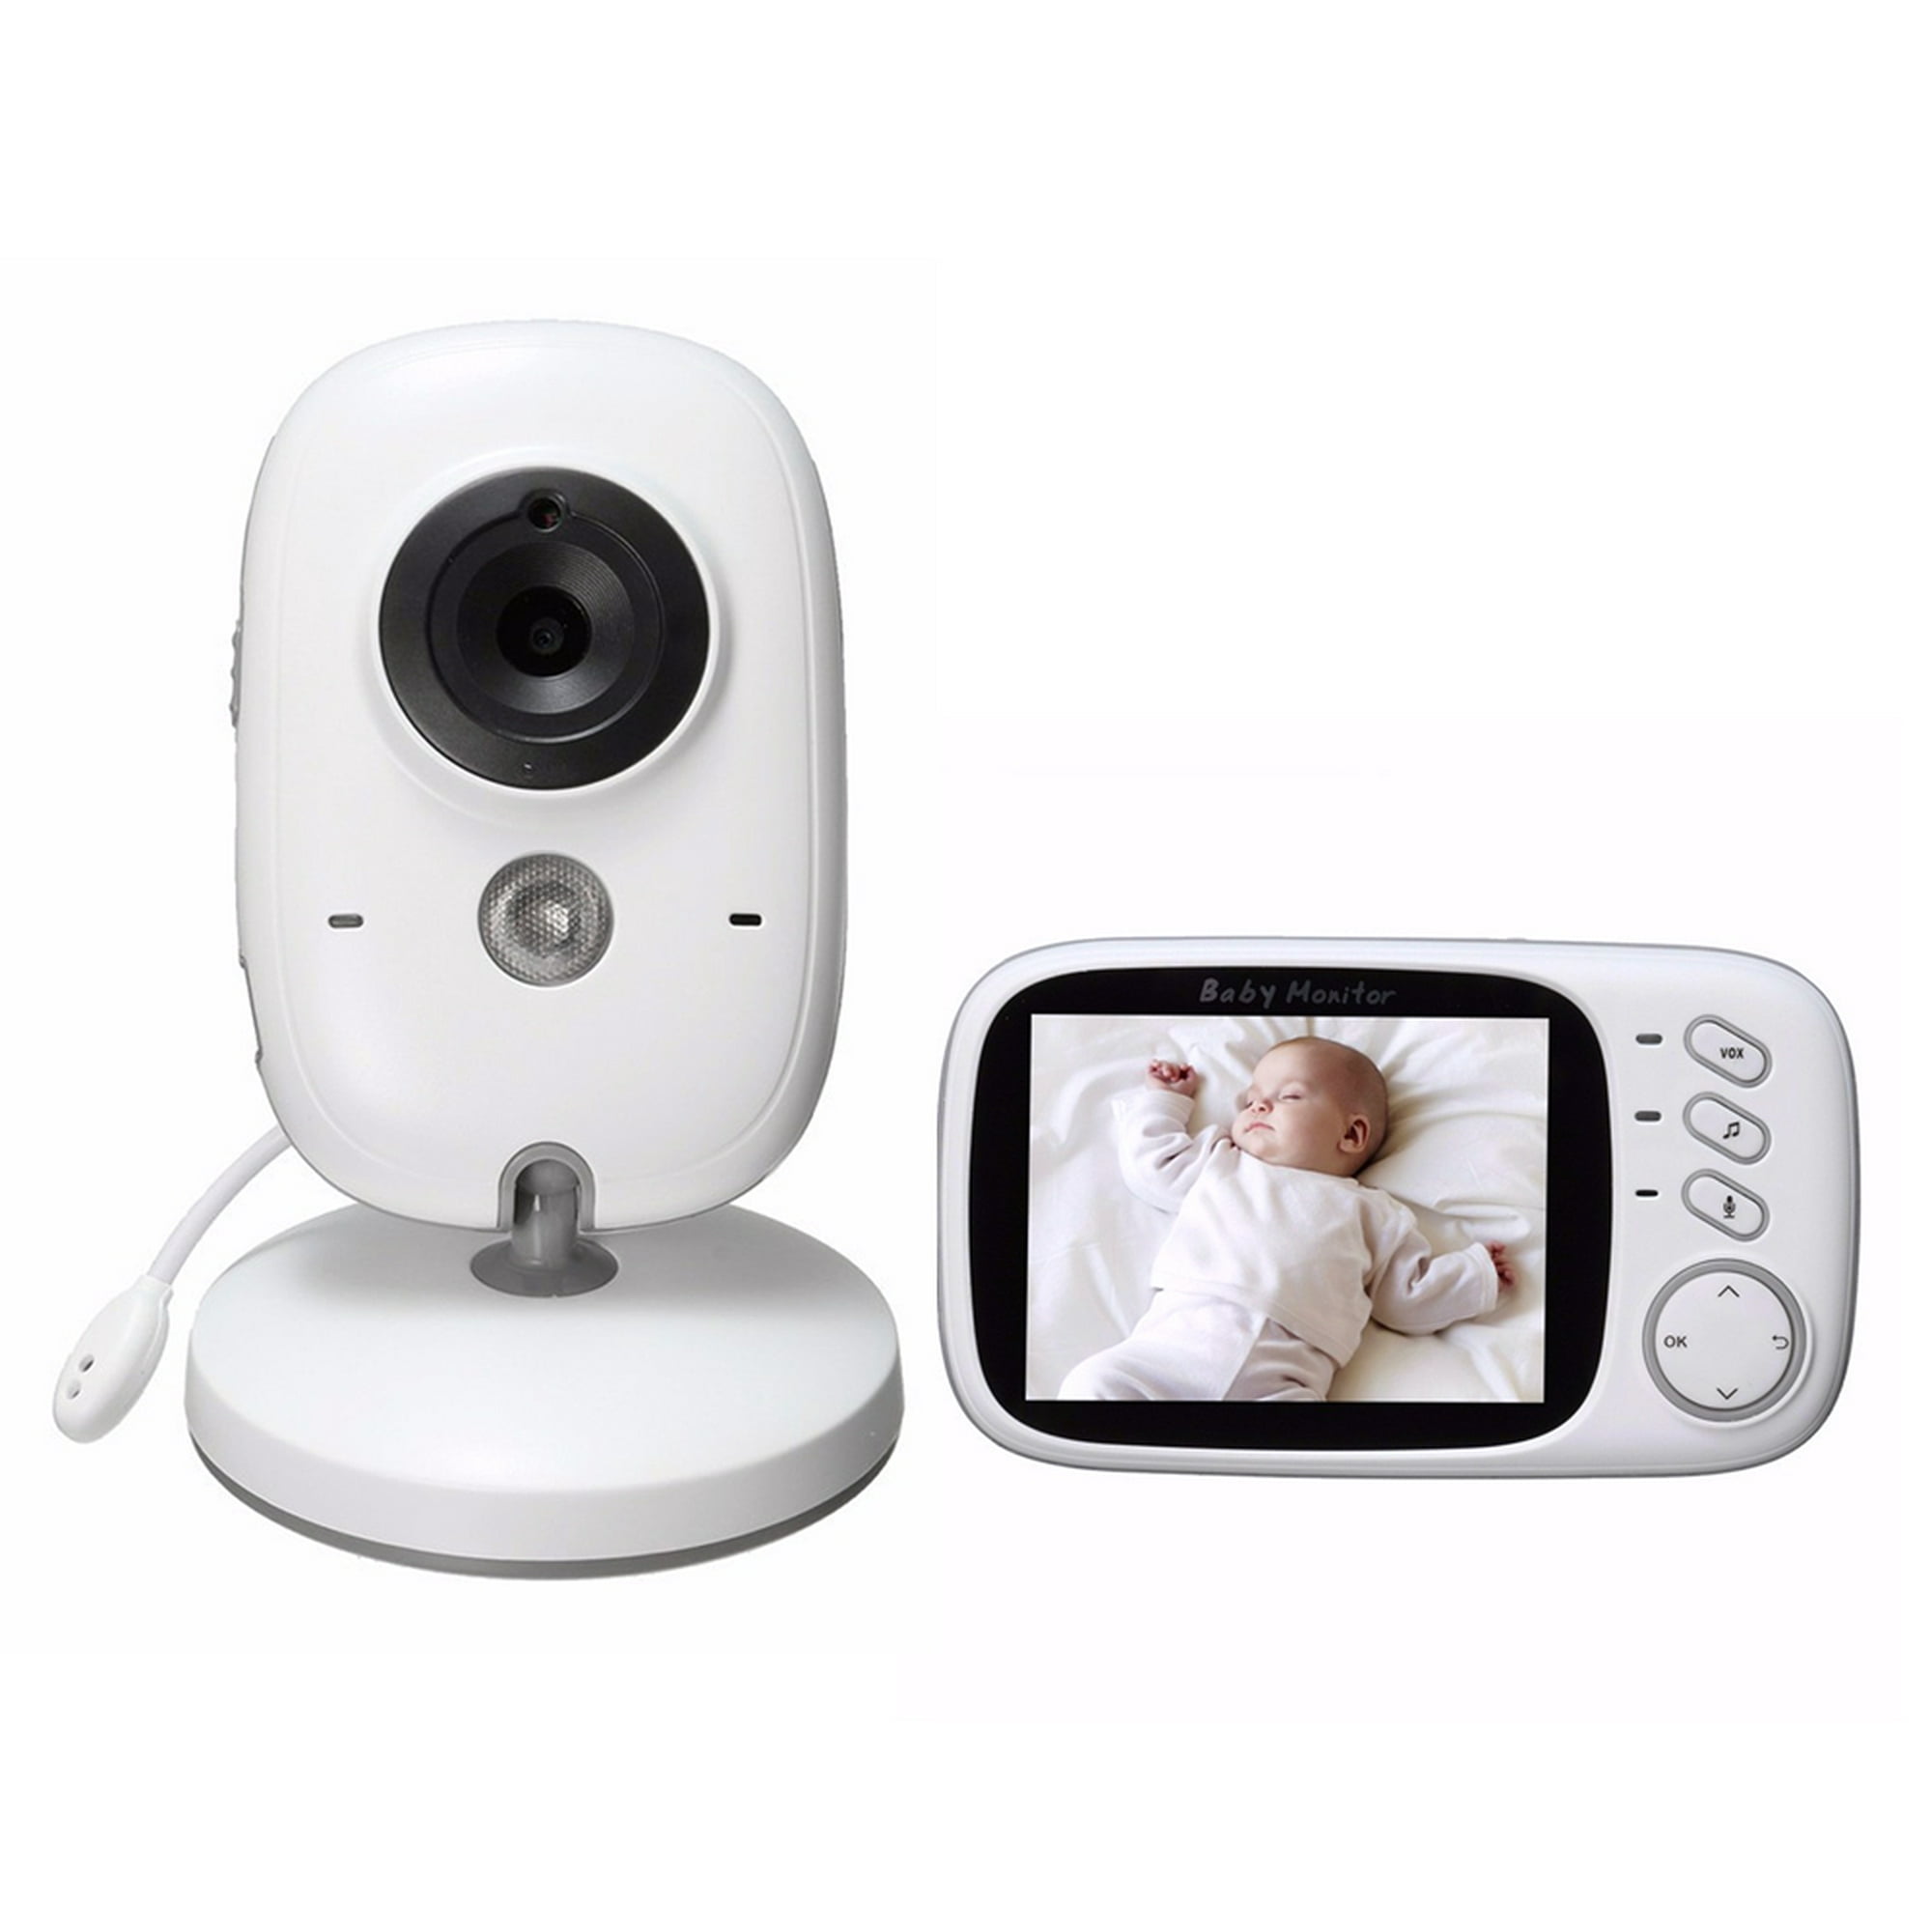 Cámara de vigilancia para bebés, monitor para bebés con cámara para monitor  para bebés con pantalla HD de 4,3 , sensor de temperatura, VOX, luz  nocturna, audio bidireccional, visión nocturn